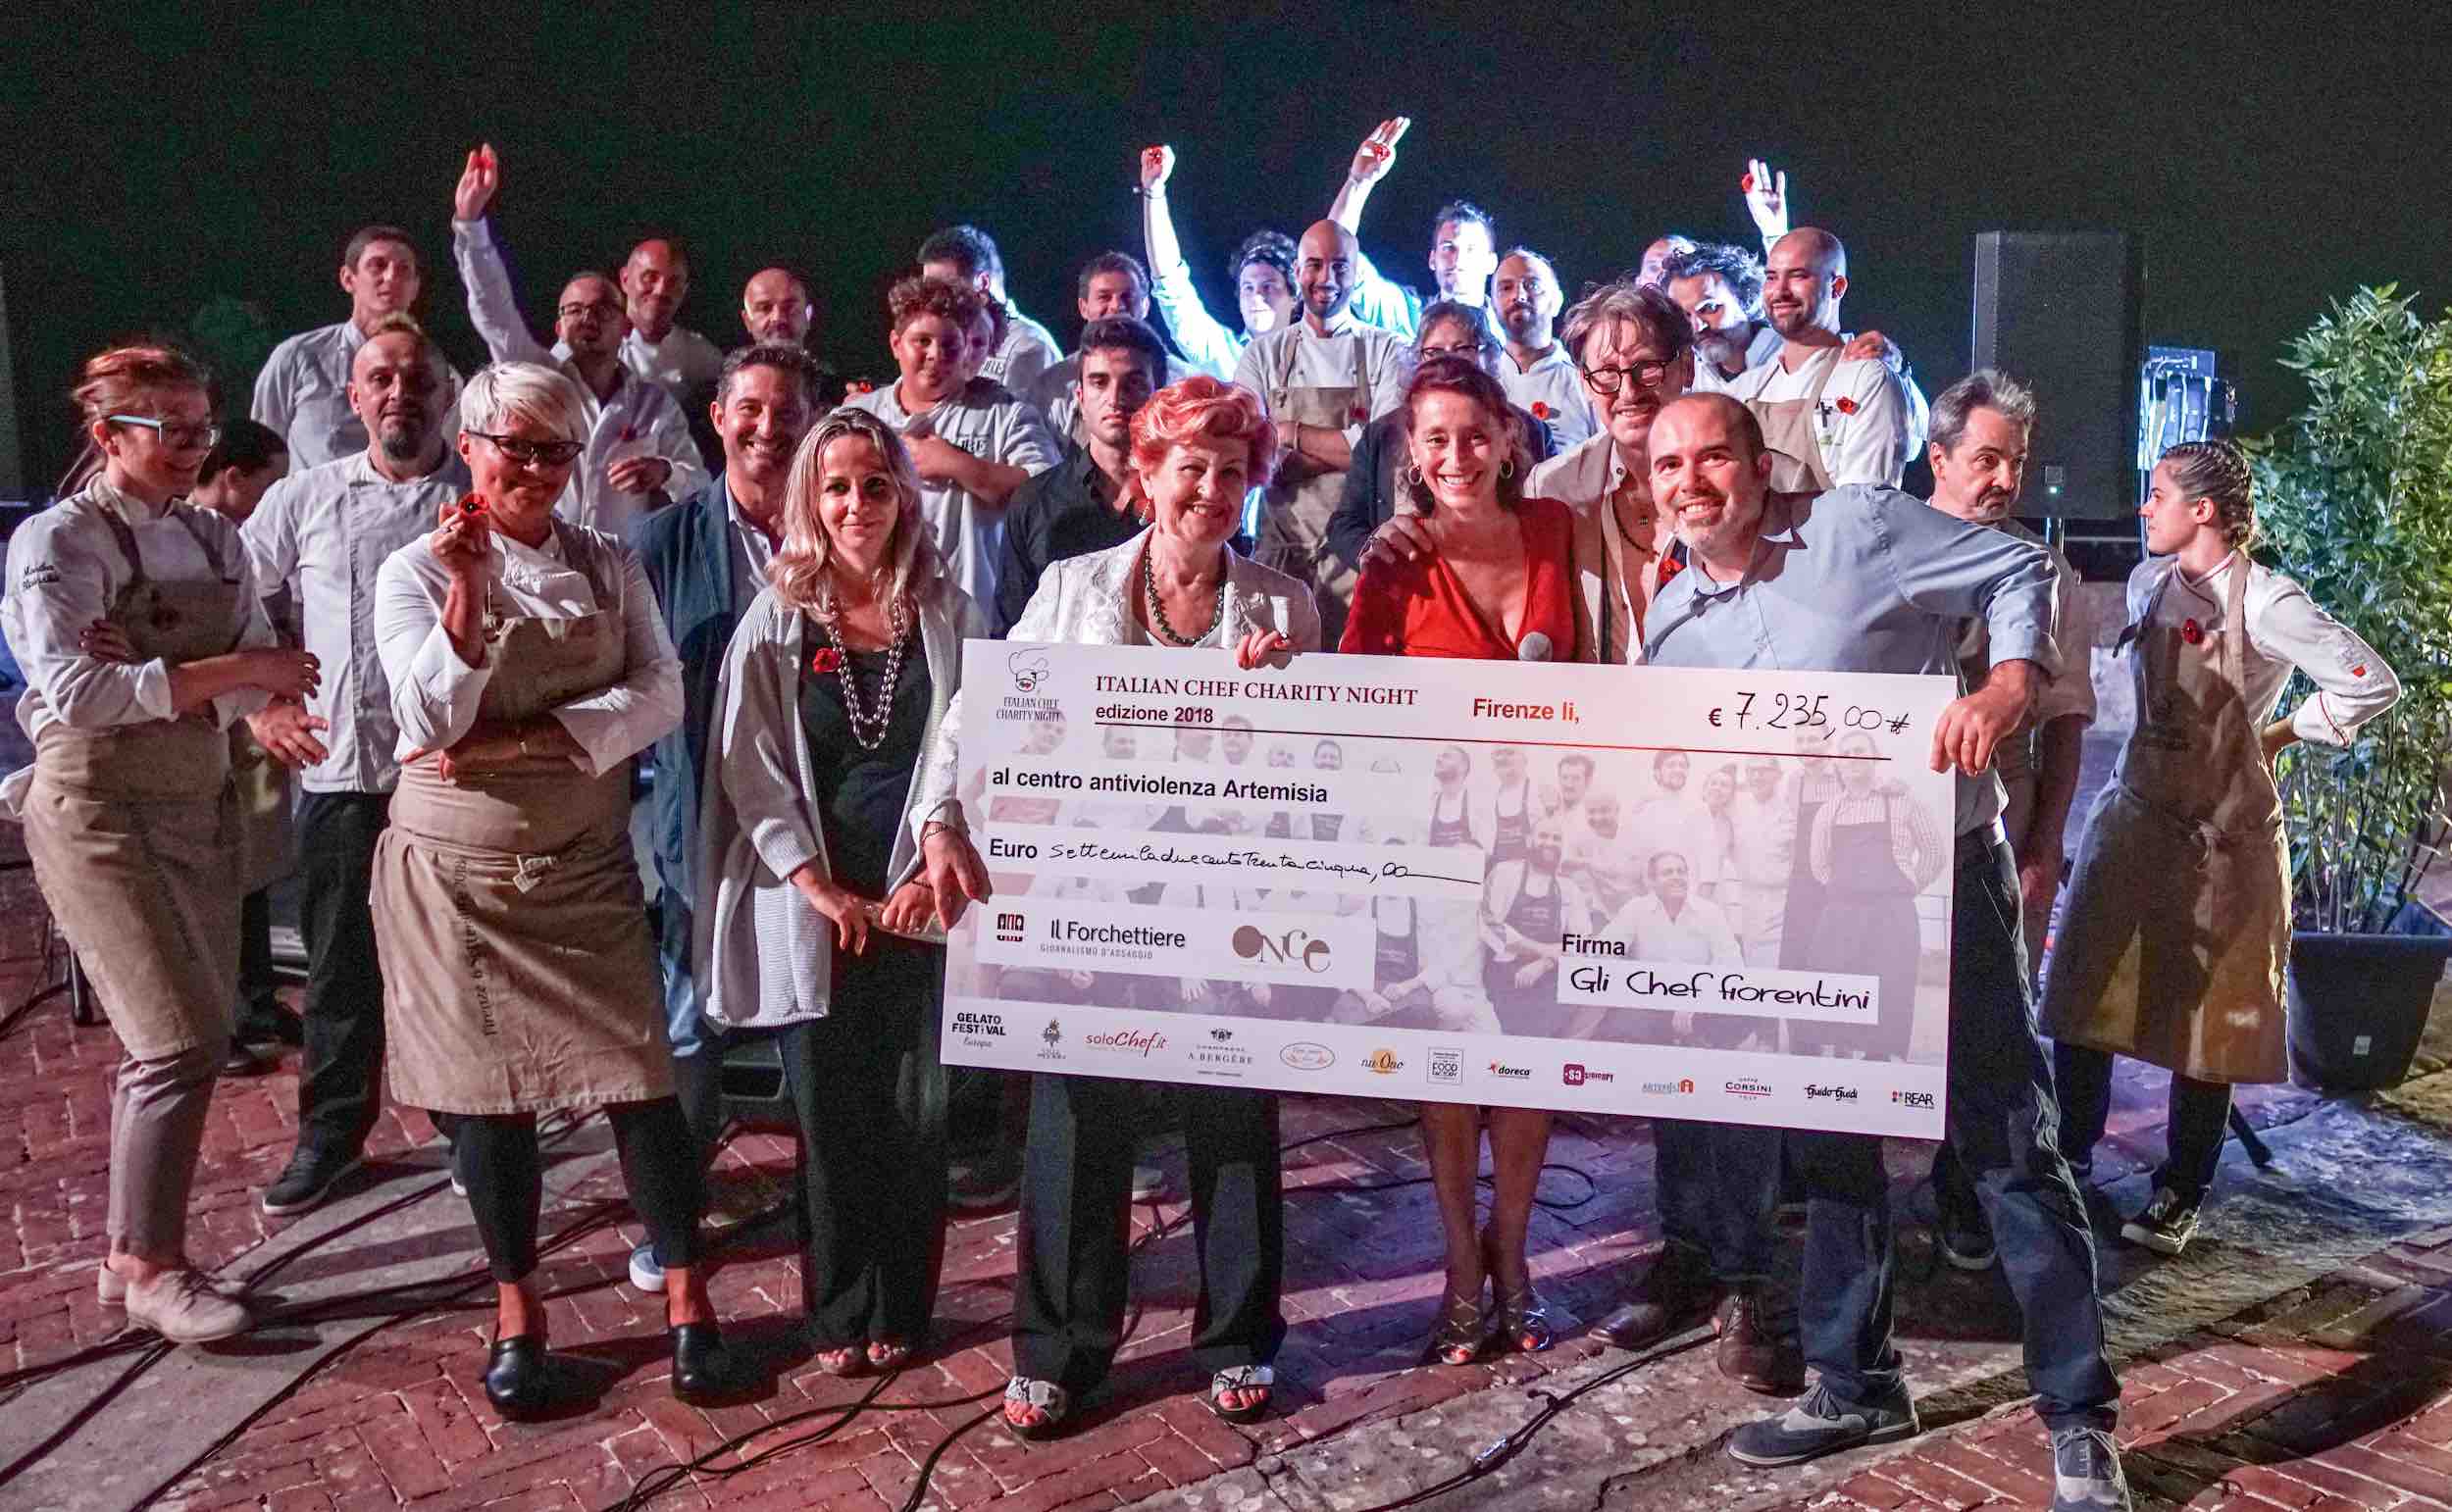 Il 4 luglio a Firenze si è tenuta la Chef Charity Night 2019, in cui sono stati raccolti 5.300 € per il Pronto Soccorso di Careggi